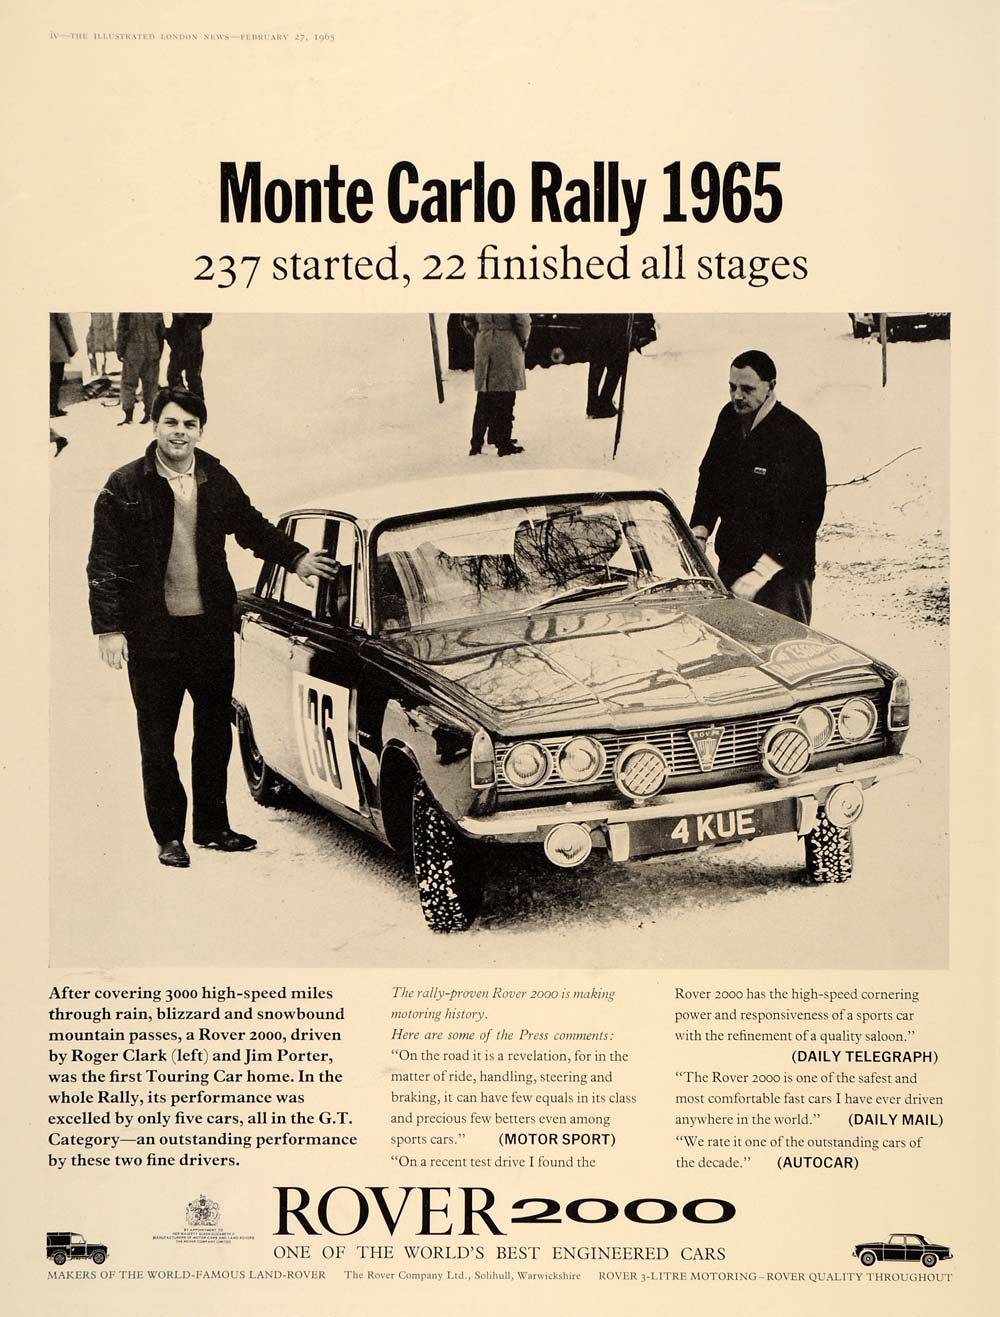 1965 Ad Rover 2000 Monte Carlo Rally Race Touring Car - ORIGINAL ADVERTISING LN1